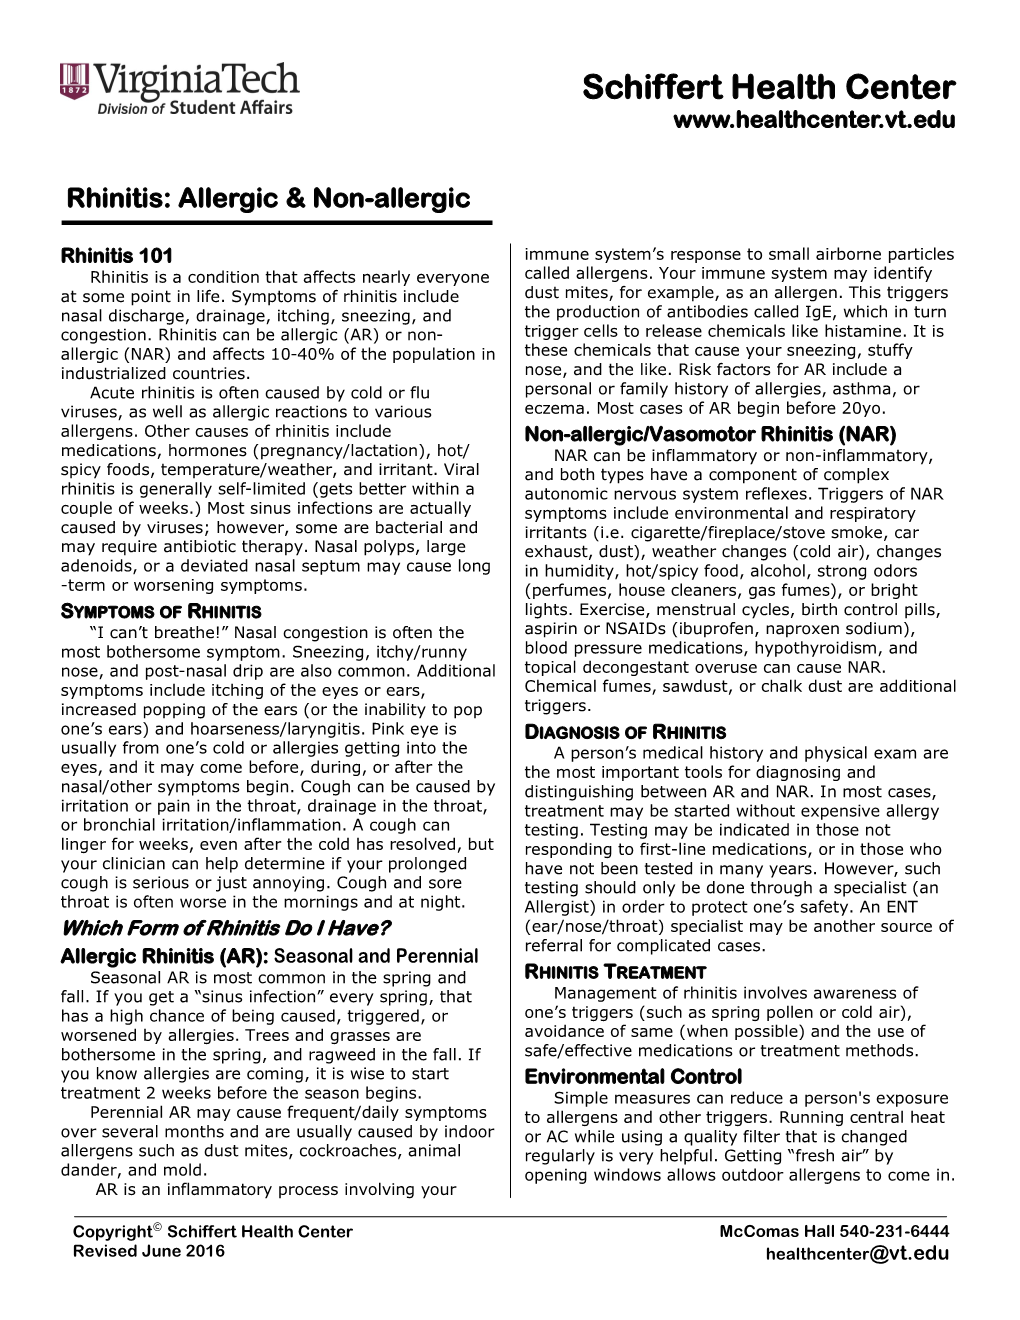 Rhinitis: Allergic & Non-Allergic